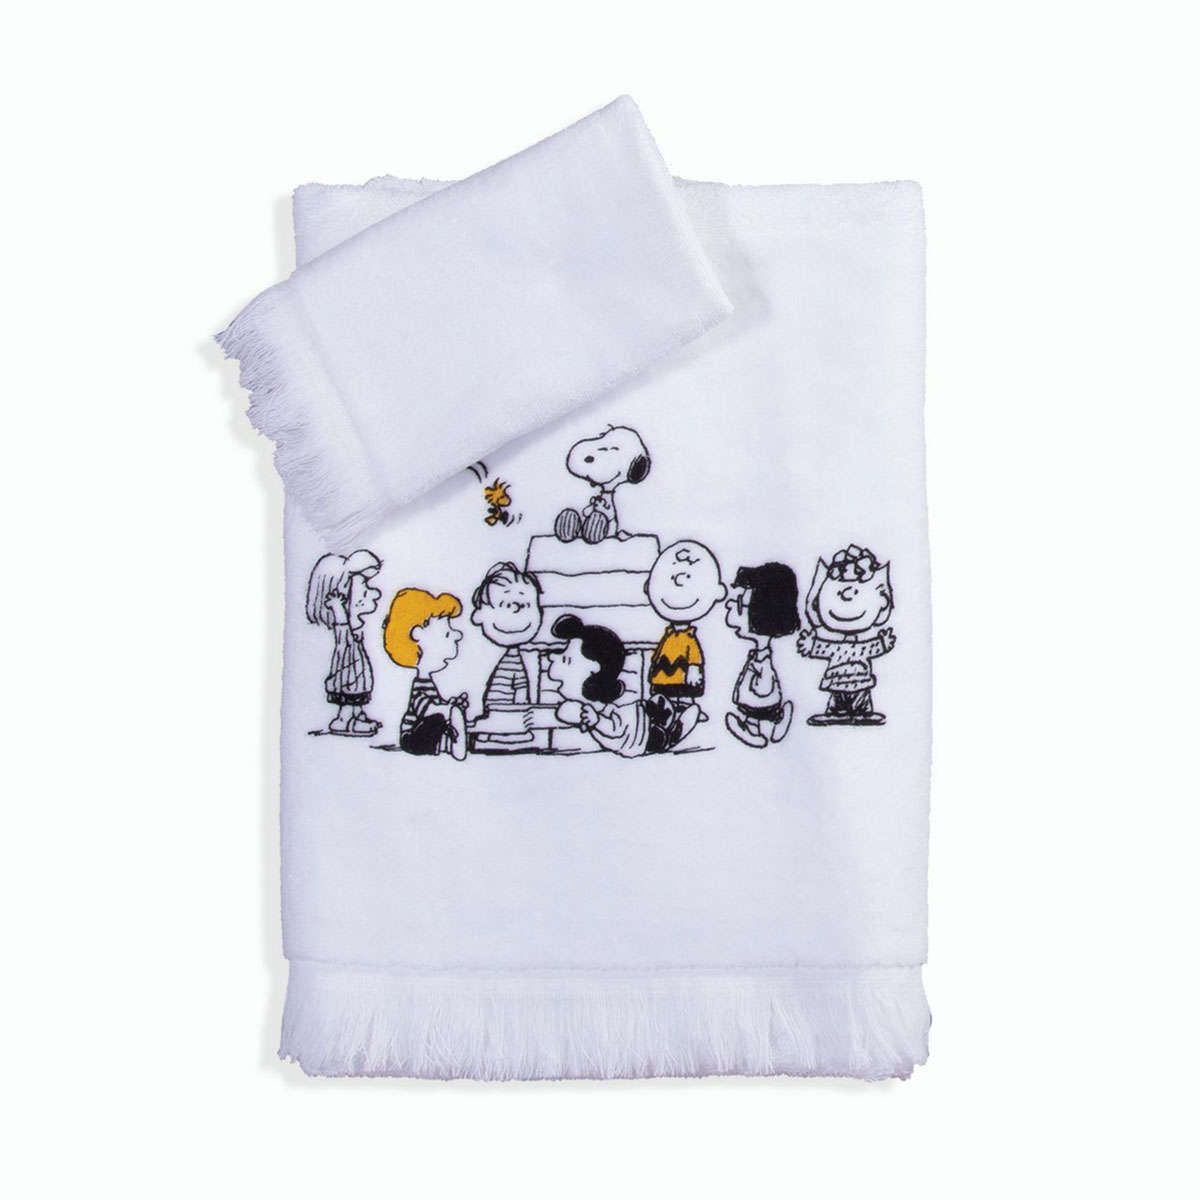 Παιδικές πετσέτες σετ 2τμχ Peanuts Forever white nef nef